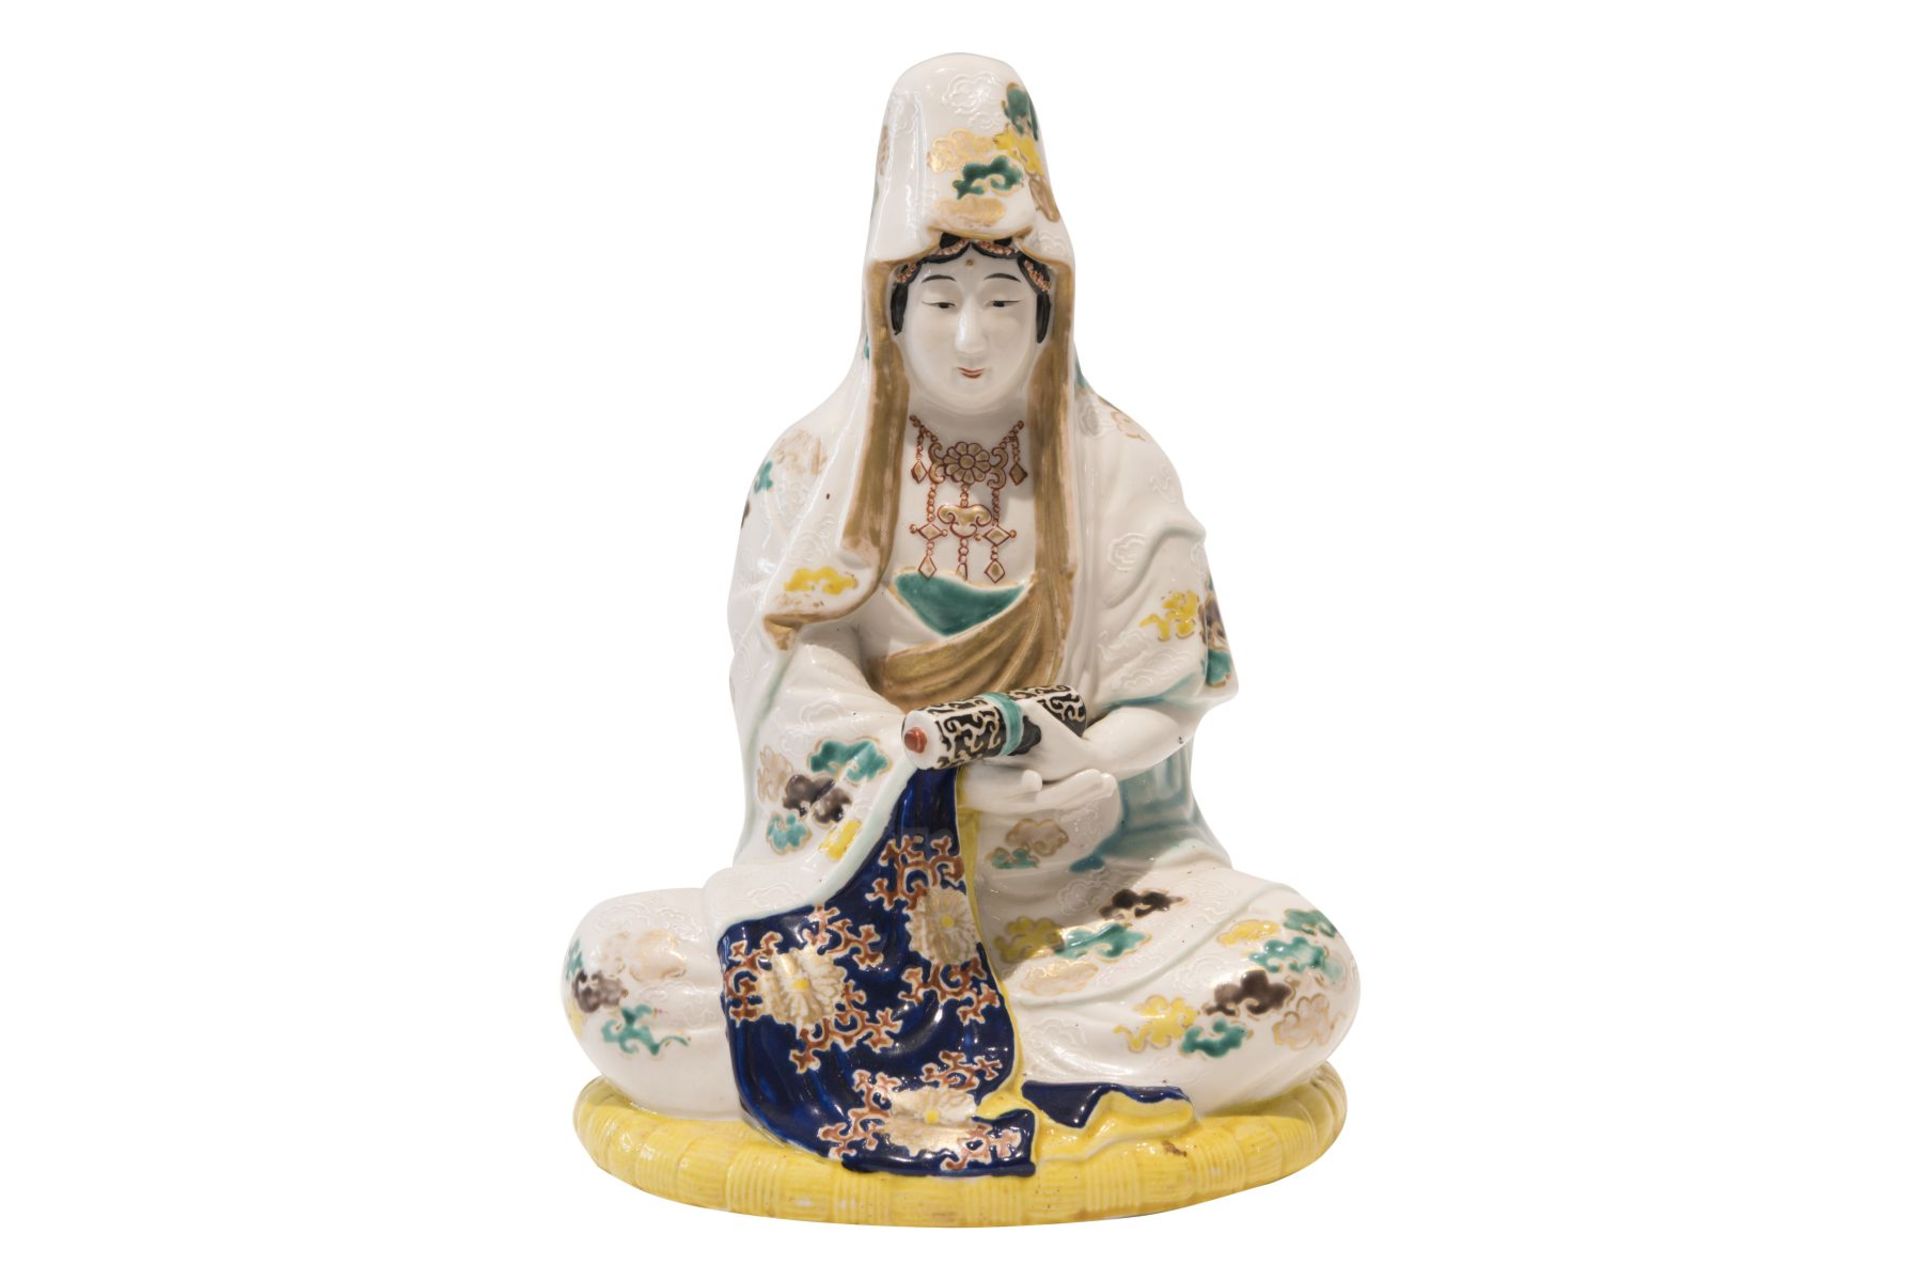 Seated female porcelain figure